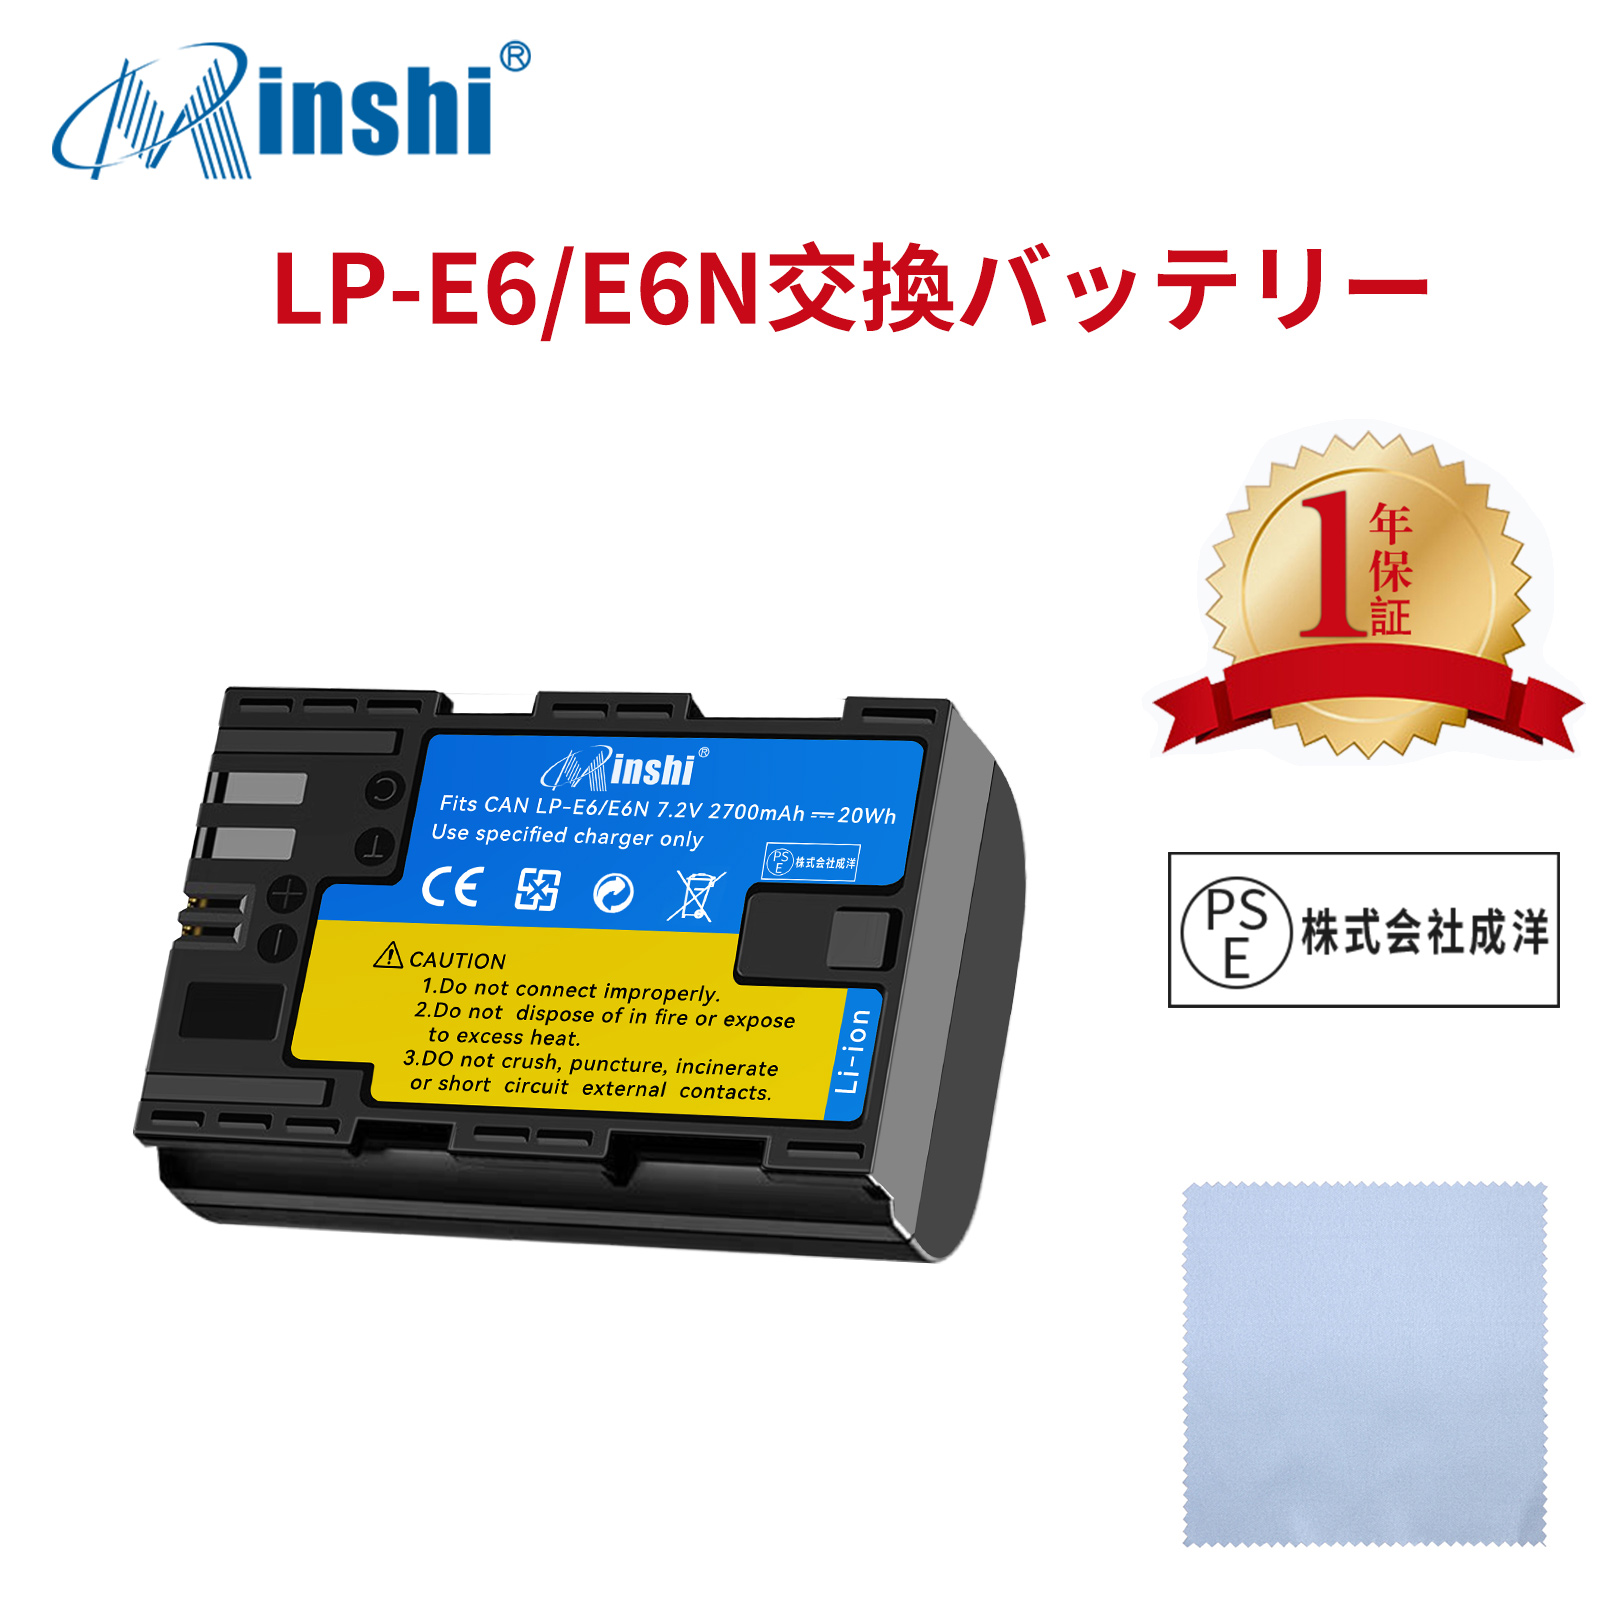 【清潔布ー付】minshi Canon EOS 6D   LP-E6N EOS6D CANON 80D 【2700mAh 7.2V 】高品質 LP-E6NH 交換用バッテリー